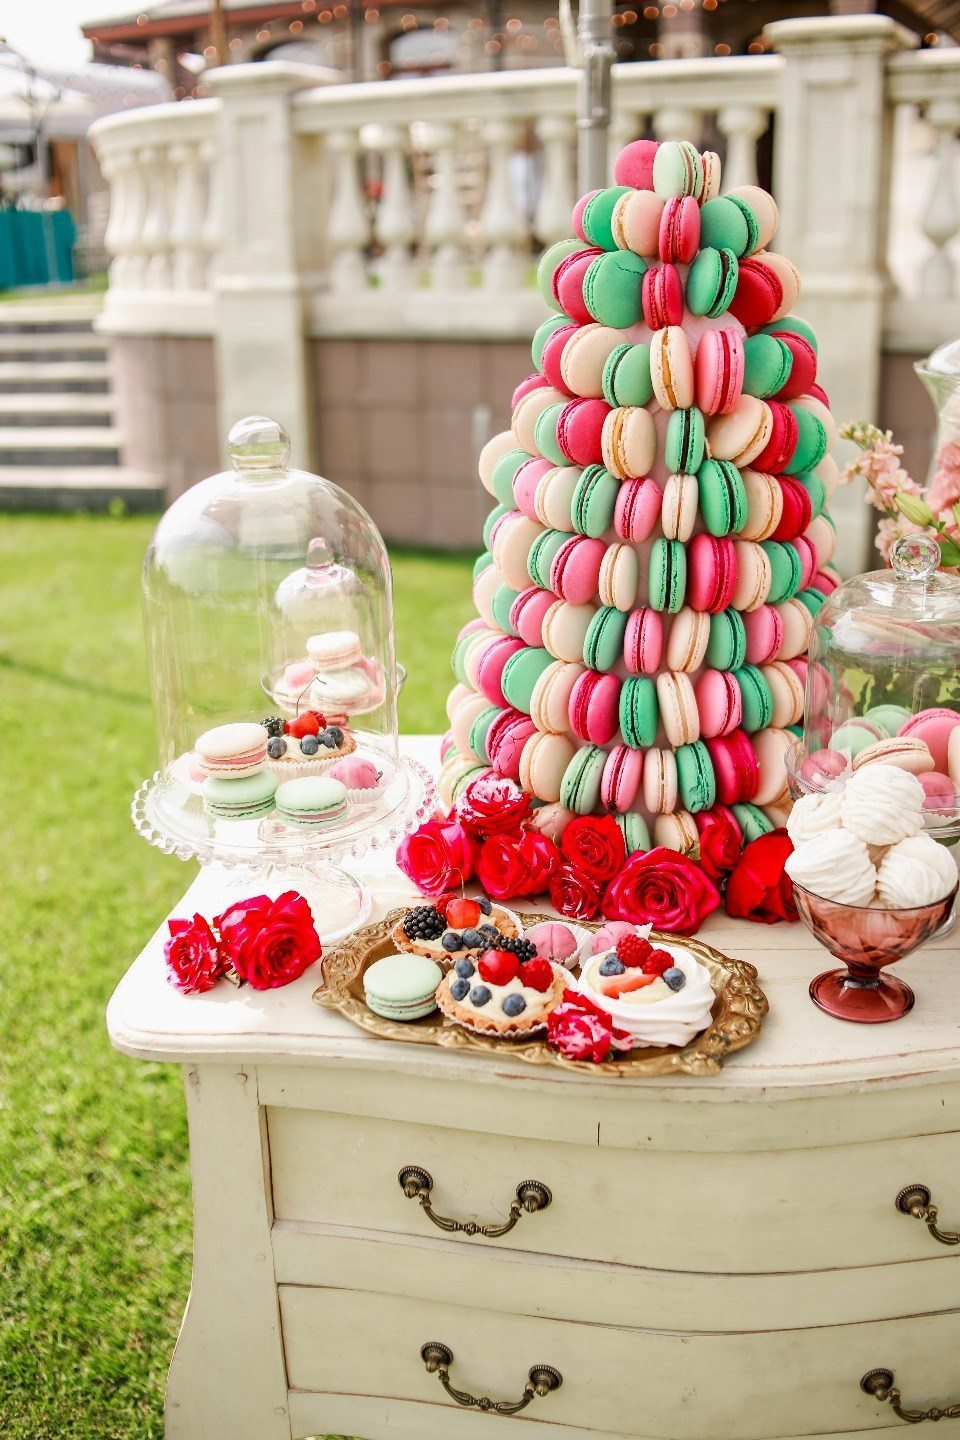 Интересантан нагласак на слаткише на сочан и светао сто ће бити веселе ознаке, направљене у општем стилу венчања